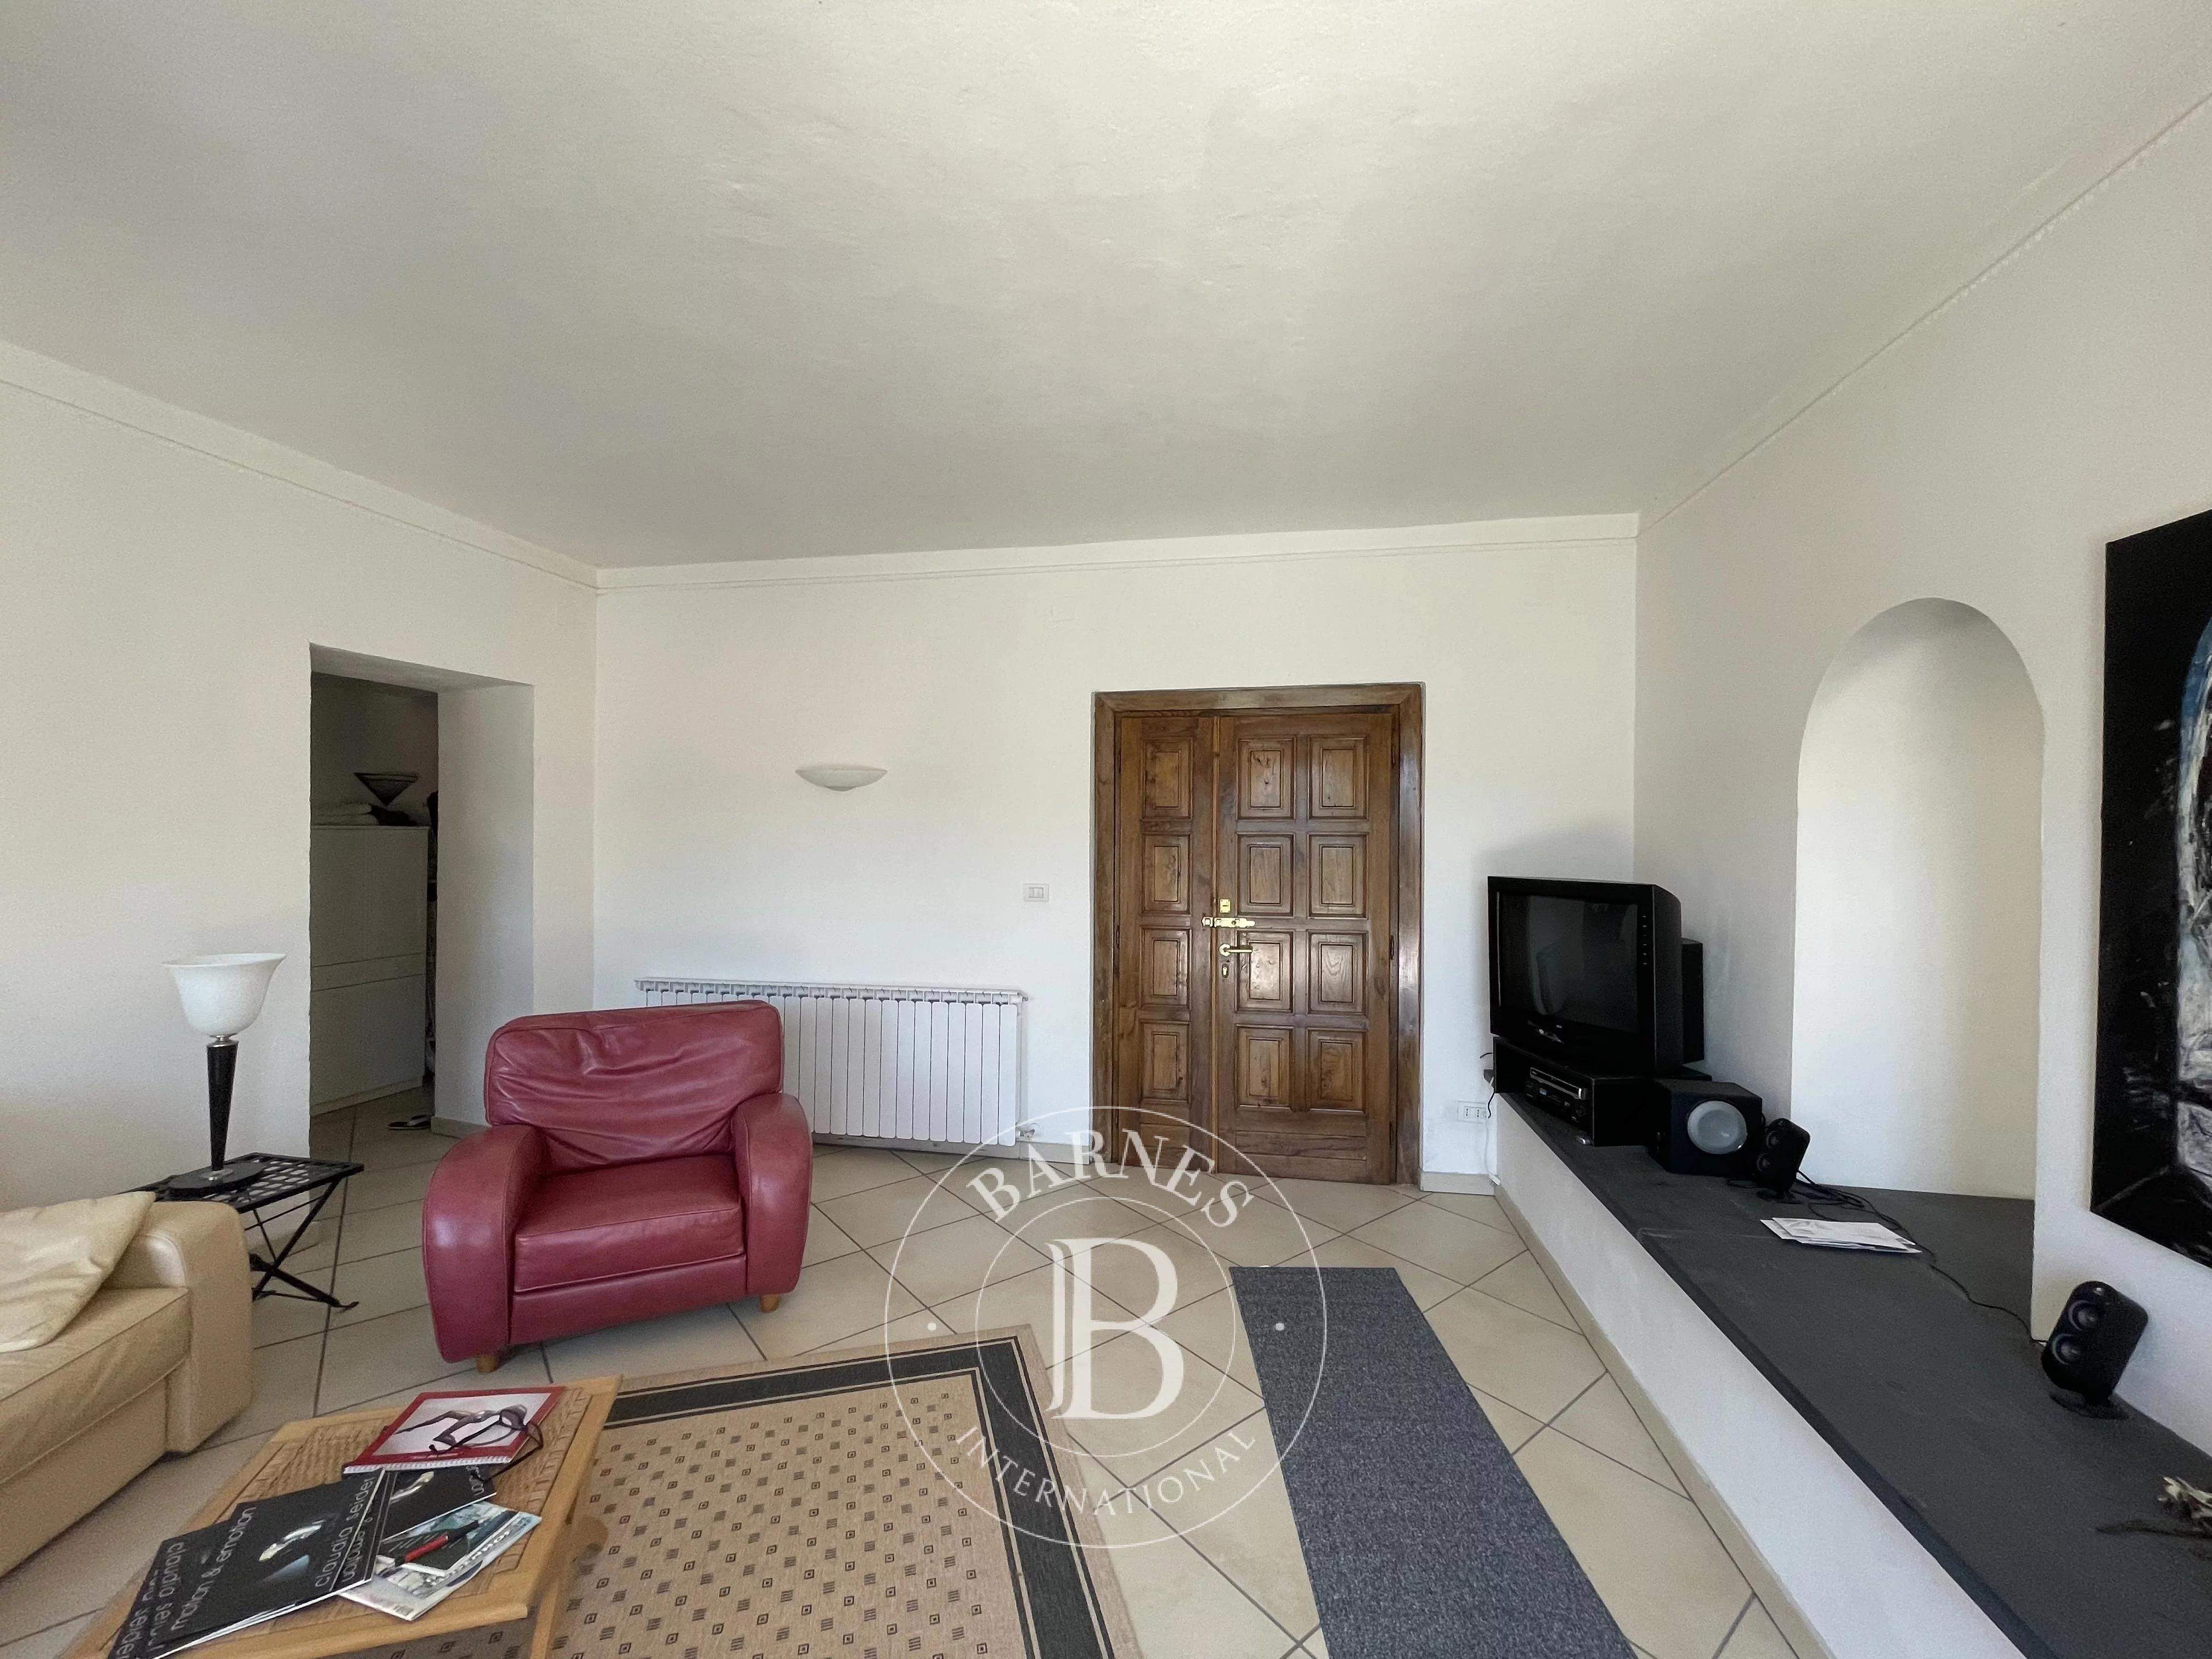 Calice al Cornoviglio  - Apartment  - picture 19